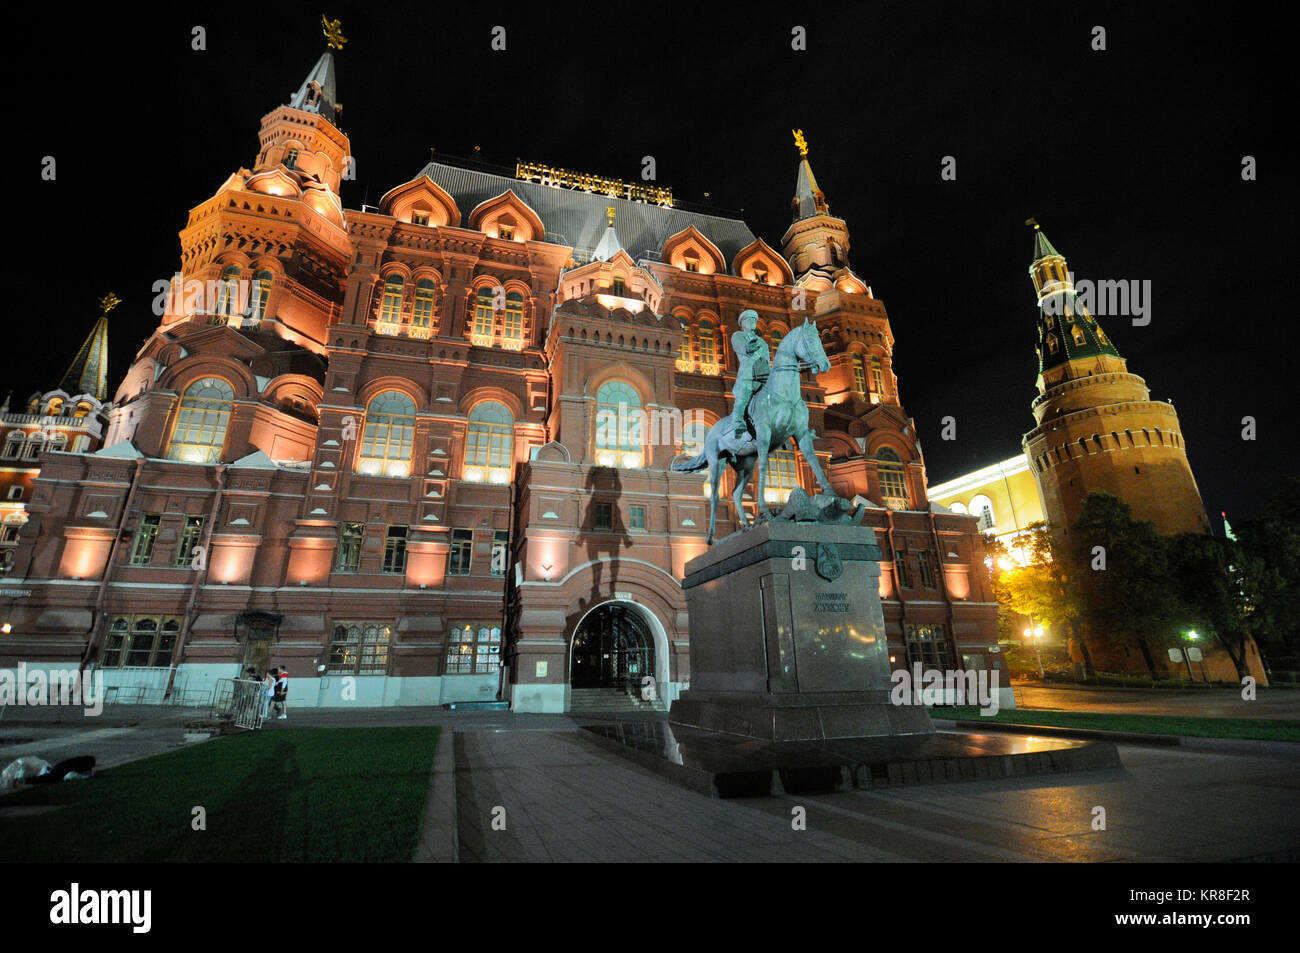 Staatliche historische Museum, Roter Platz, Moskau, Russland Stockfoto